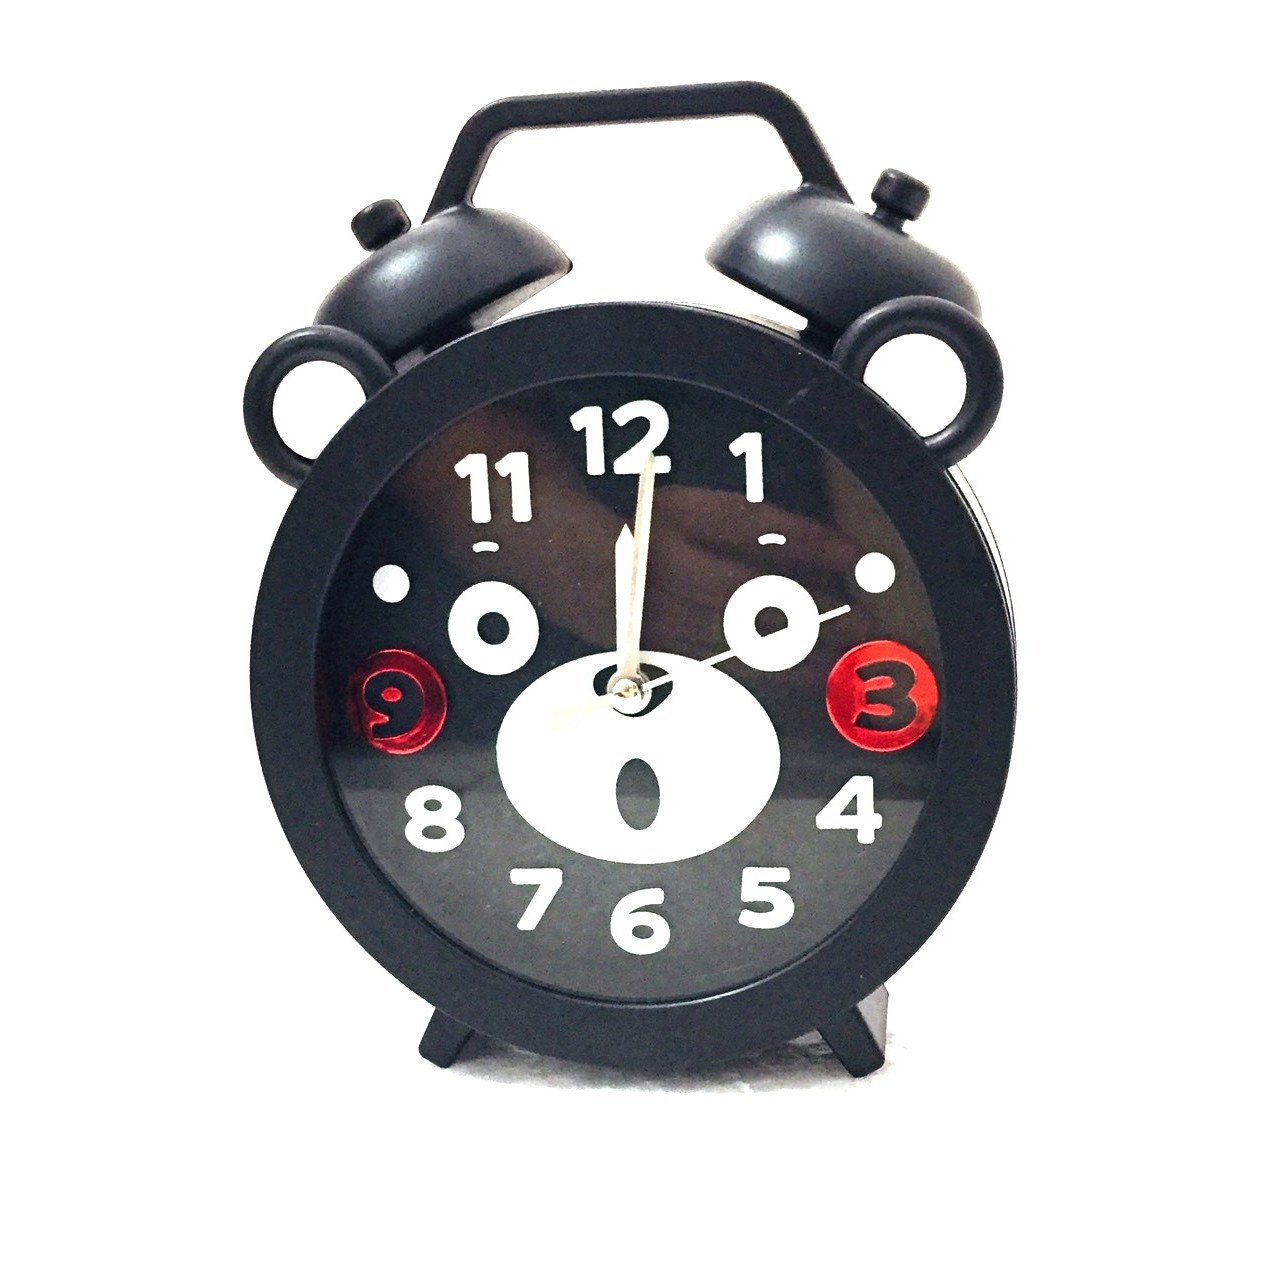 Đồng hồ báo thức để bàn LY1144A- Đen